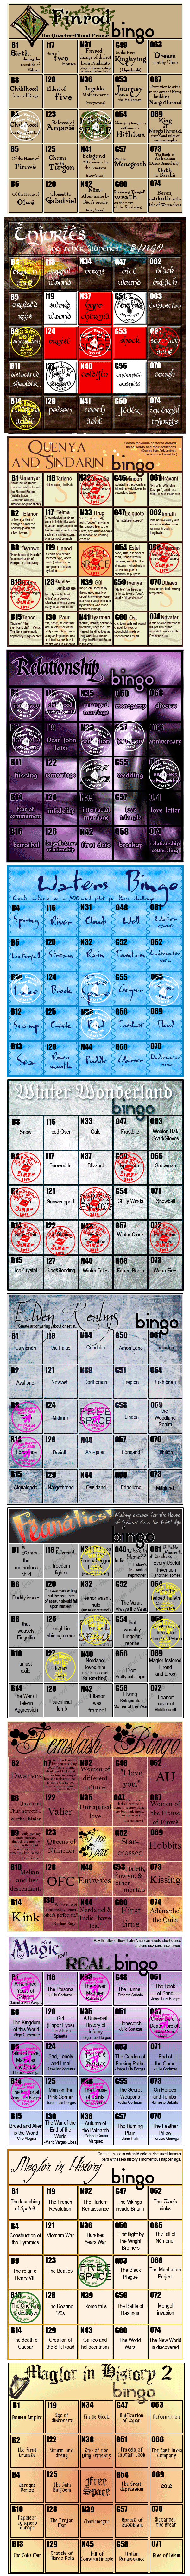 avi17's Bingo Cards